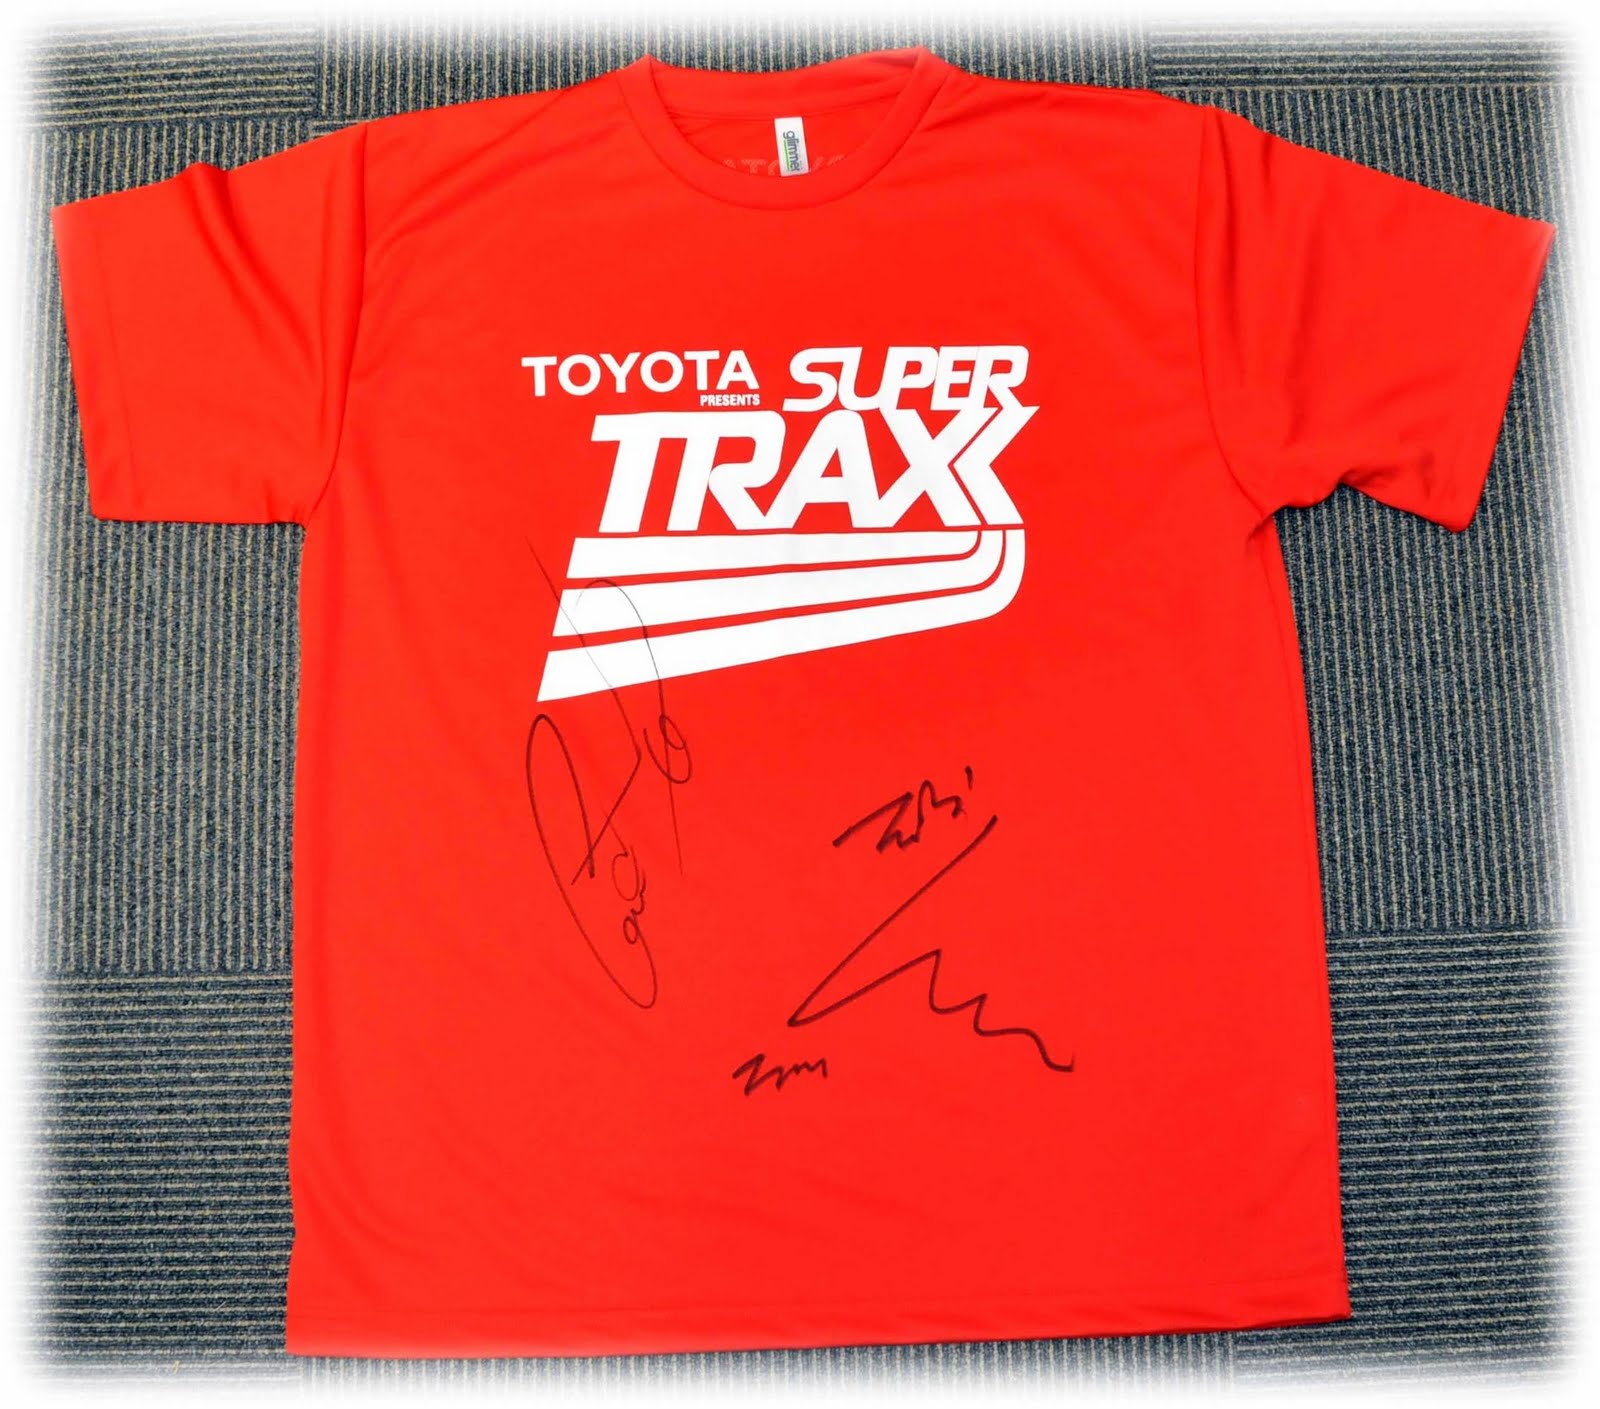 pics - [Pics] GD&TOP y Taeyang Items autografiados para el SuperTraxx Signed+gdtop+shirt+for+supertraxx